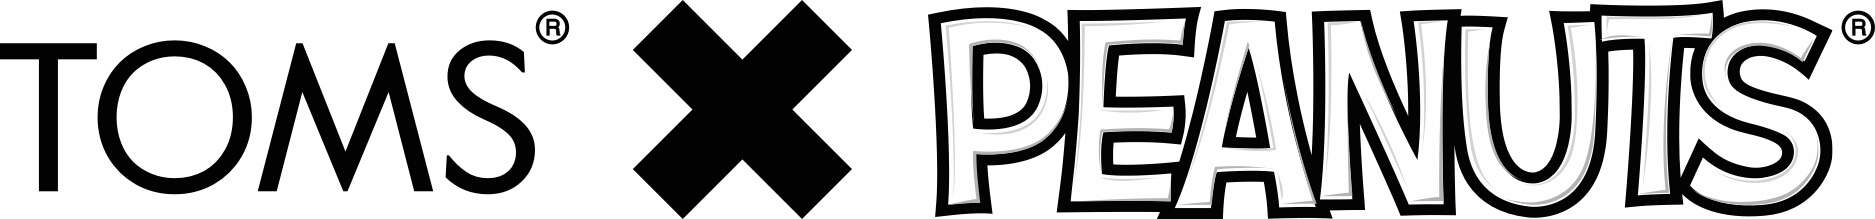 TOMS(R)xPEANUTS(R) logo lockup